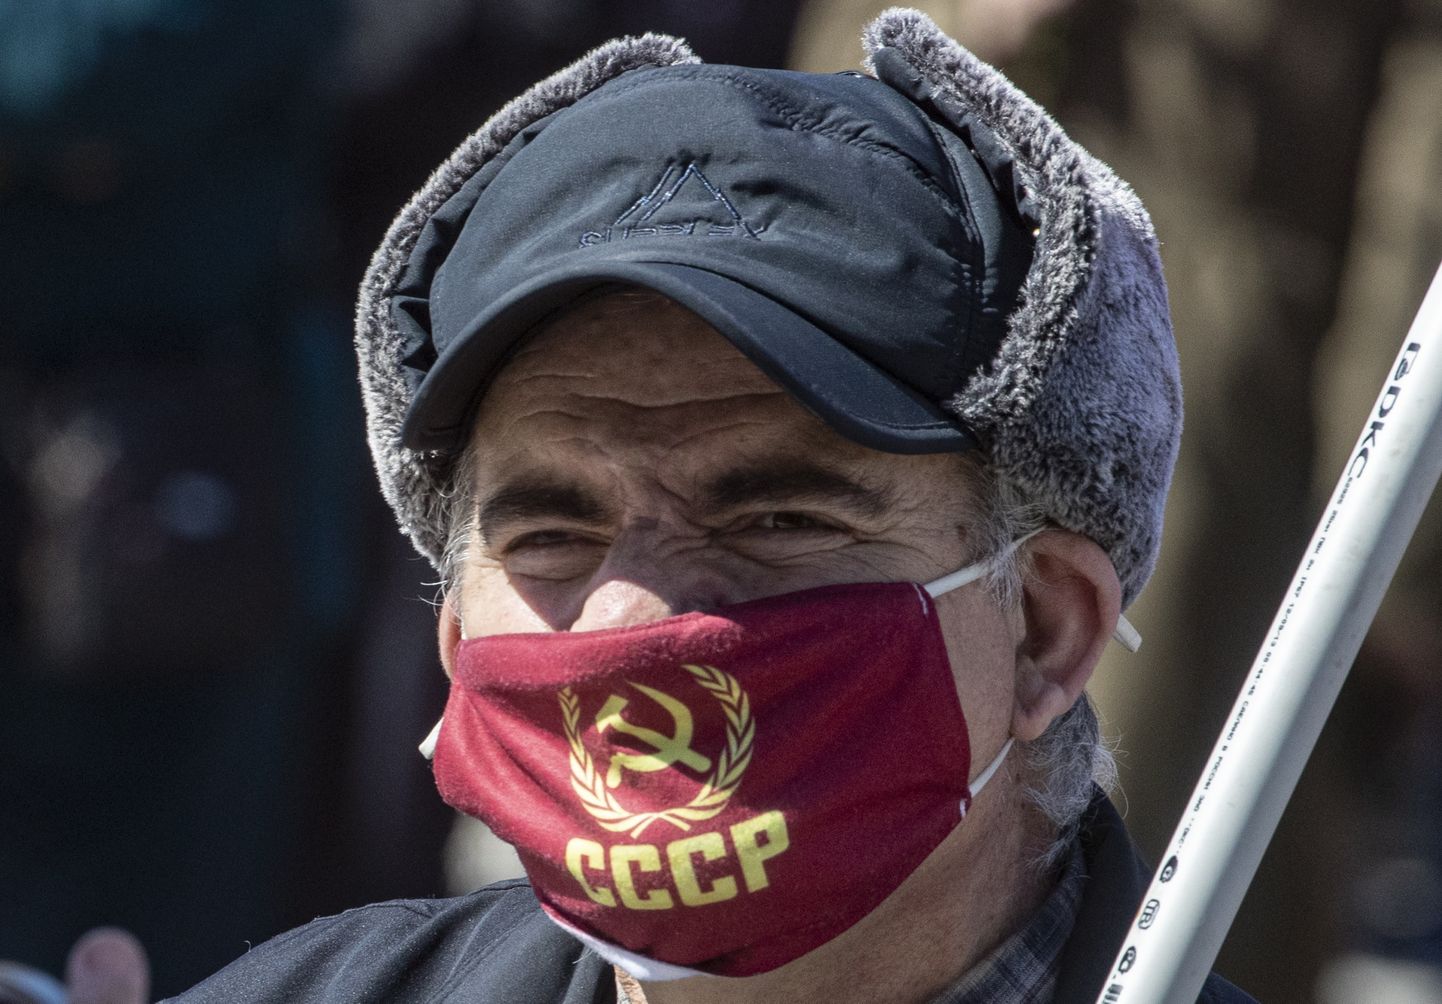 Vene tööline 1. mai demonstratsioonil Moskvas